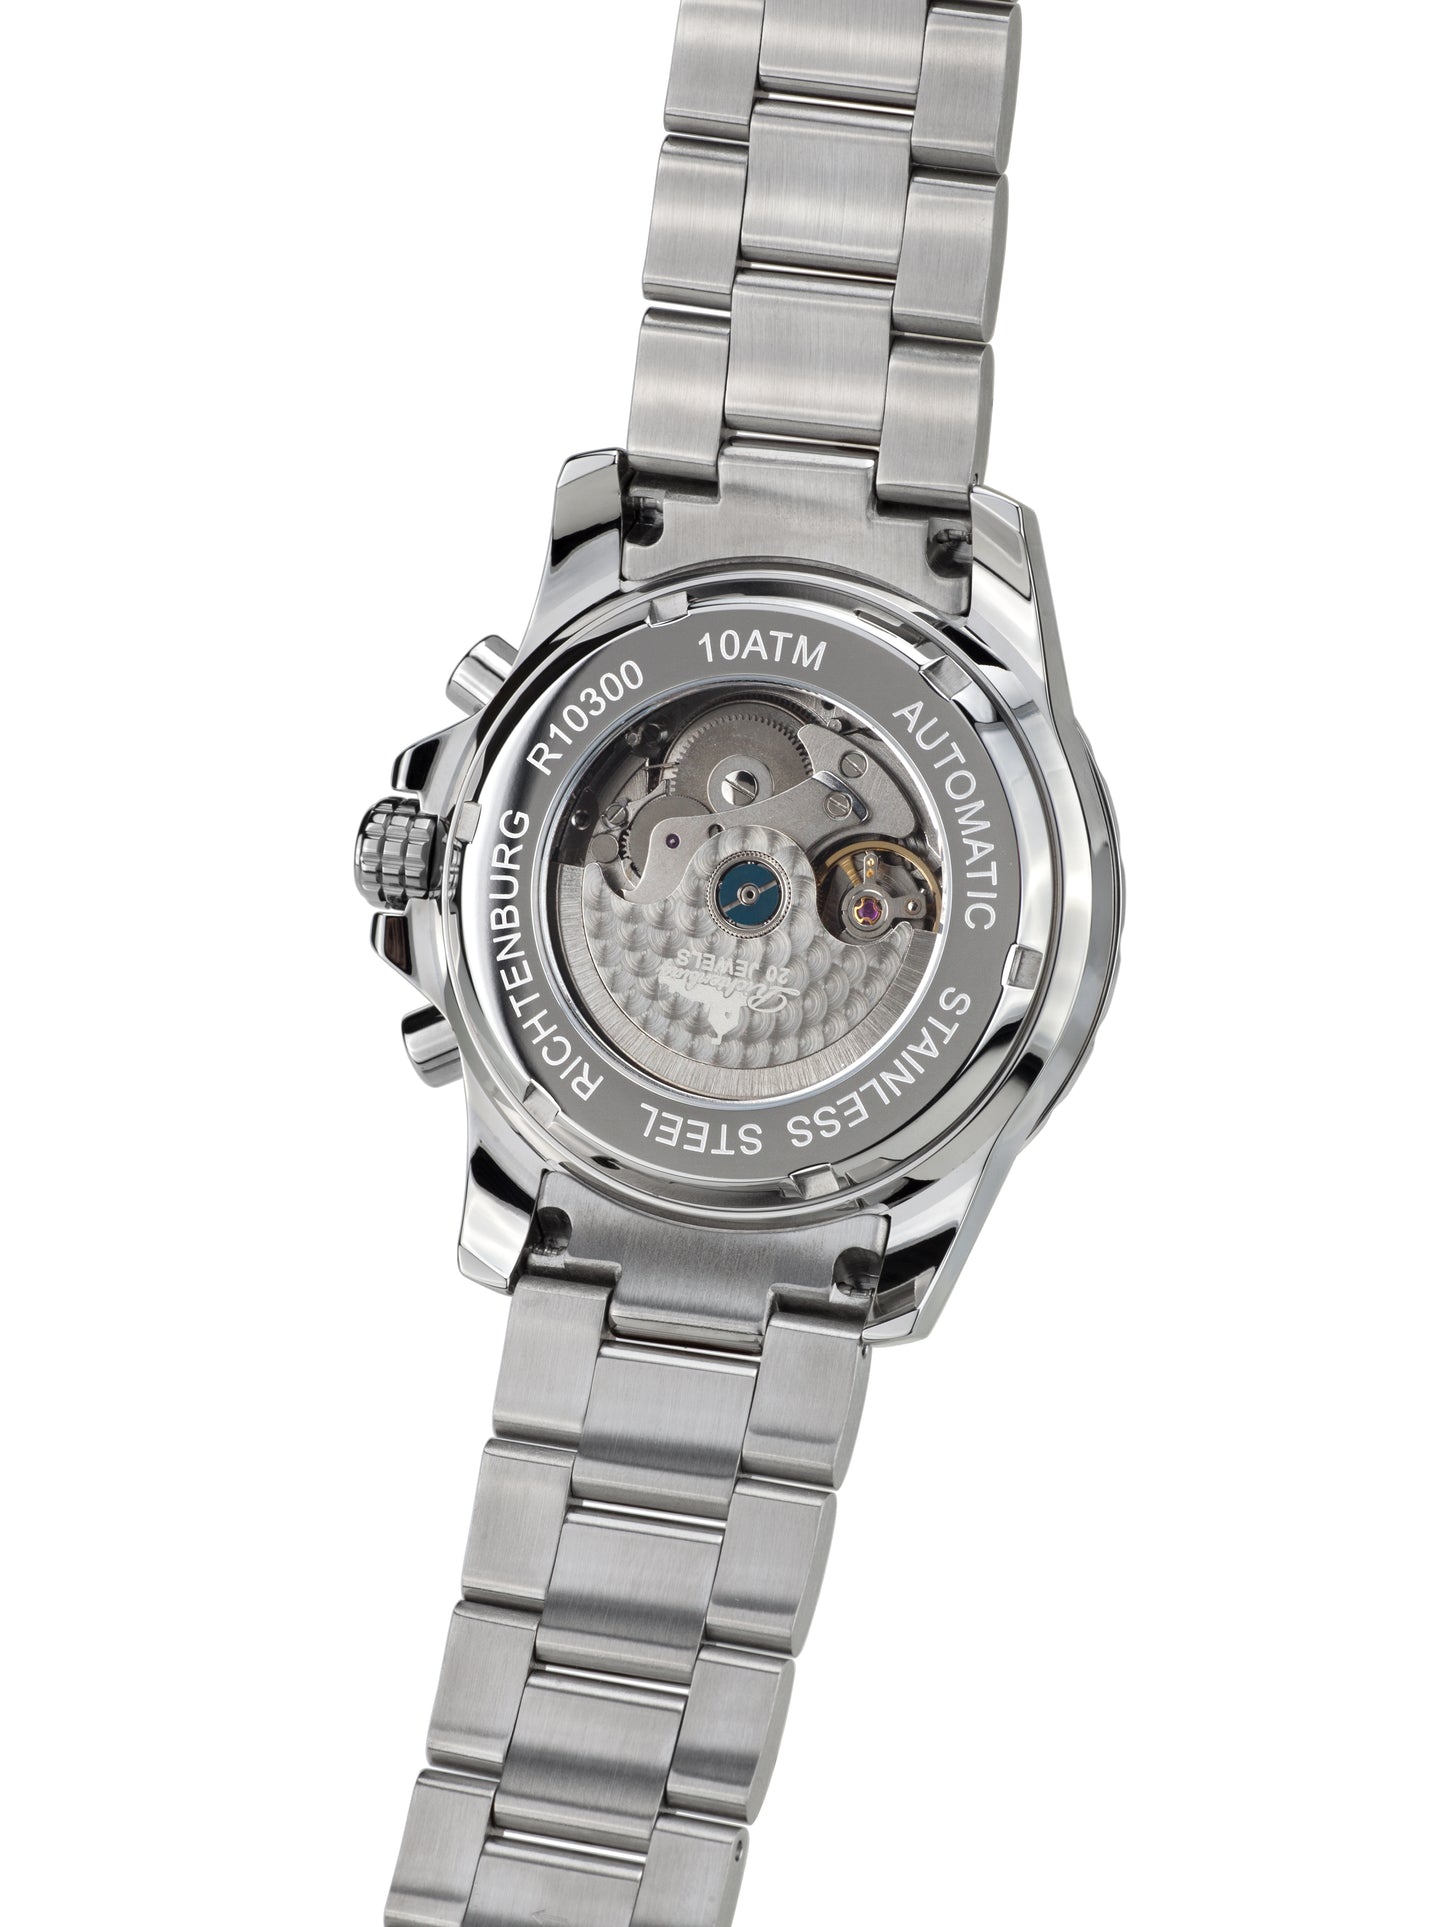 Automatic watches — Romantica — Richtenburg — steel silver